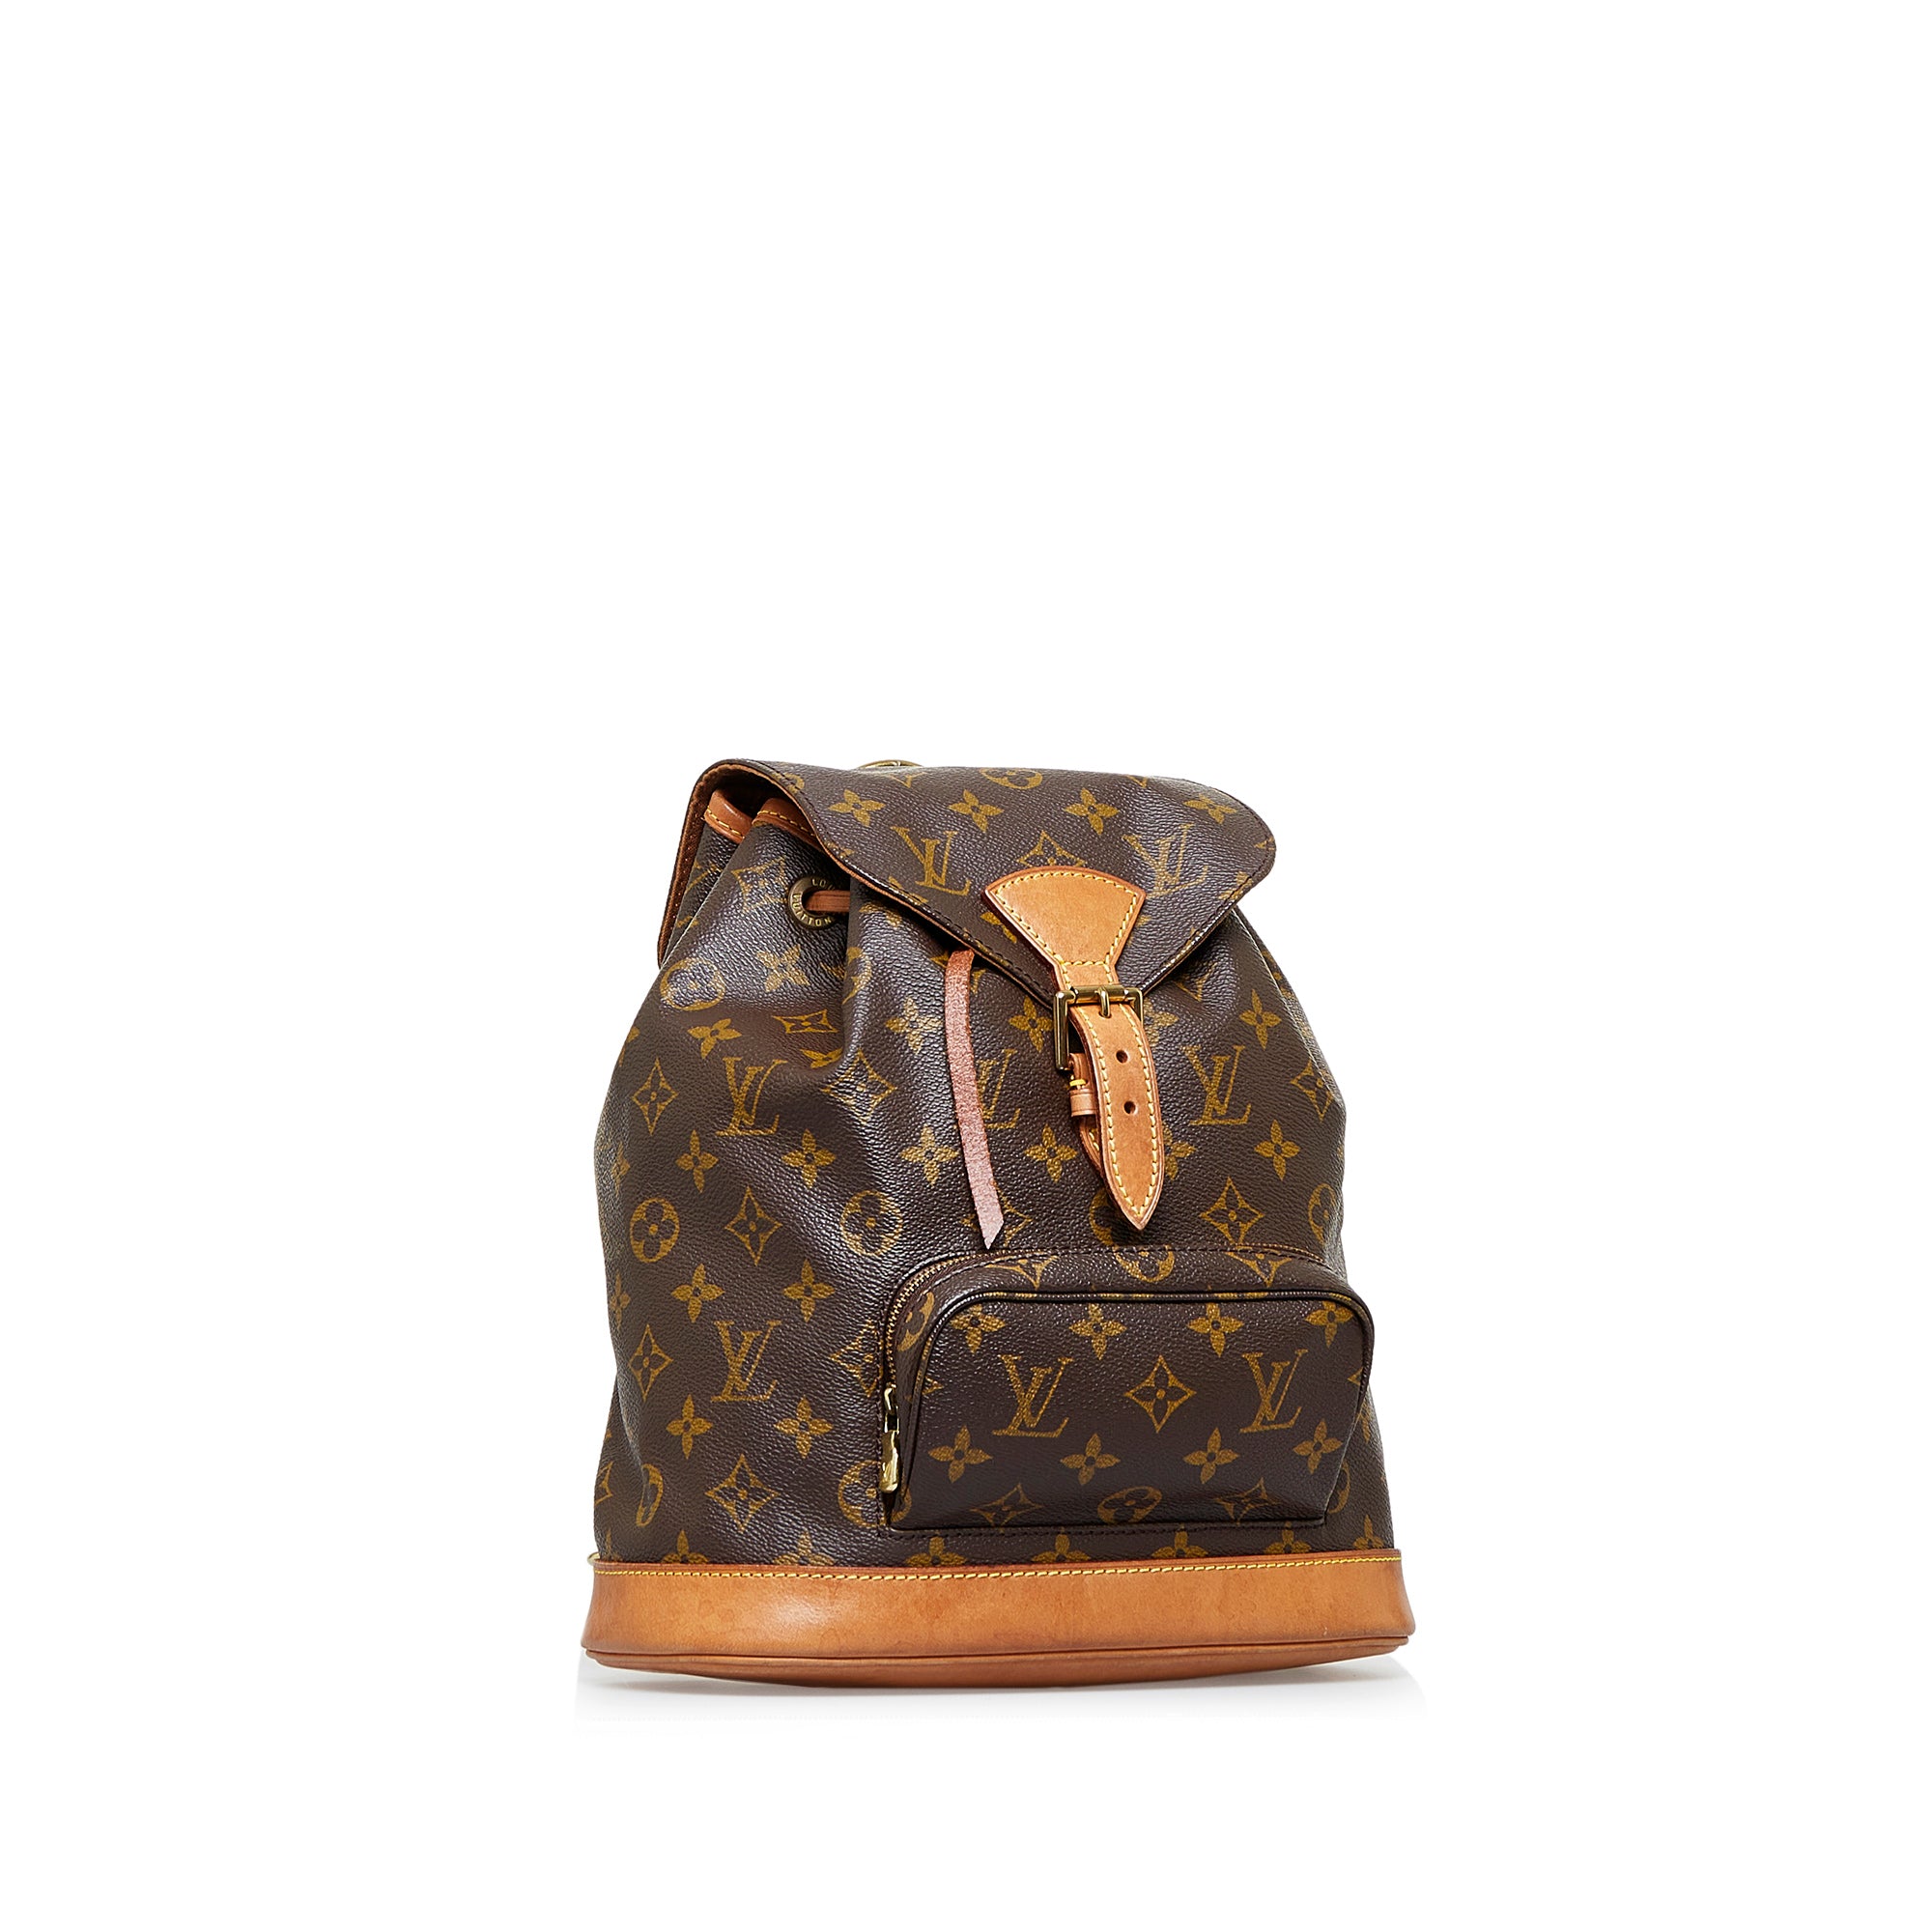 Vintage Louis Vuitton Montsouris MM Backpack